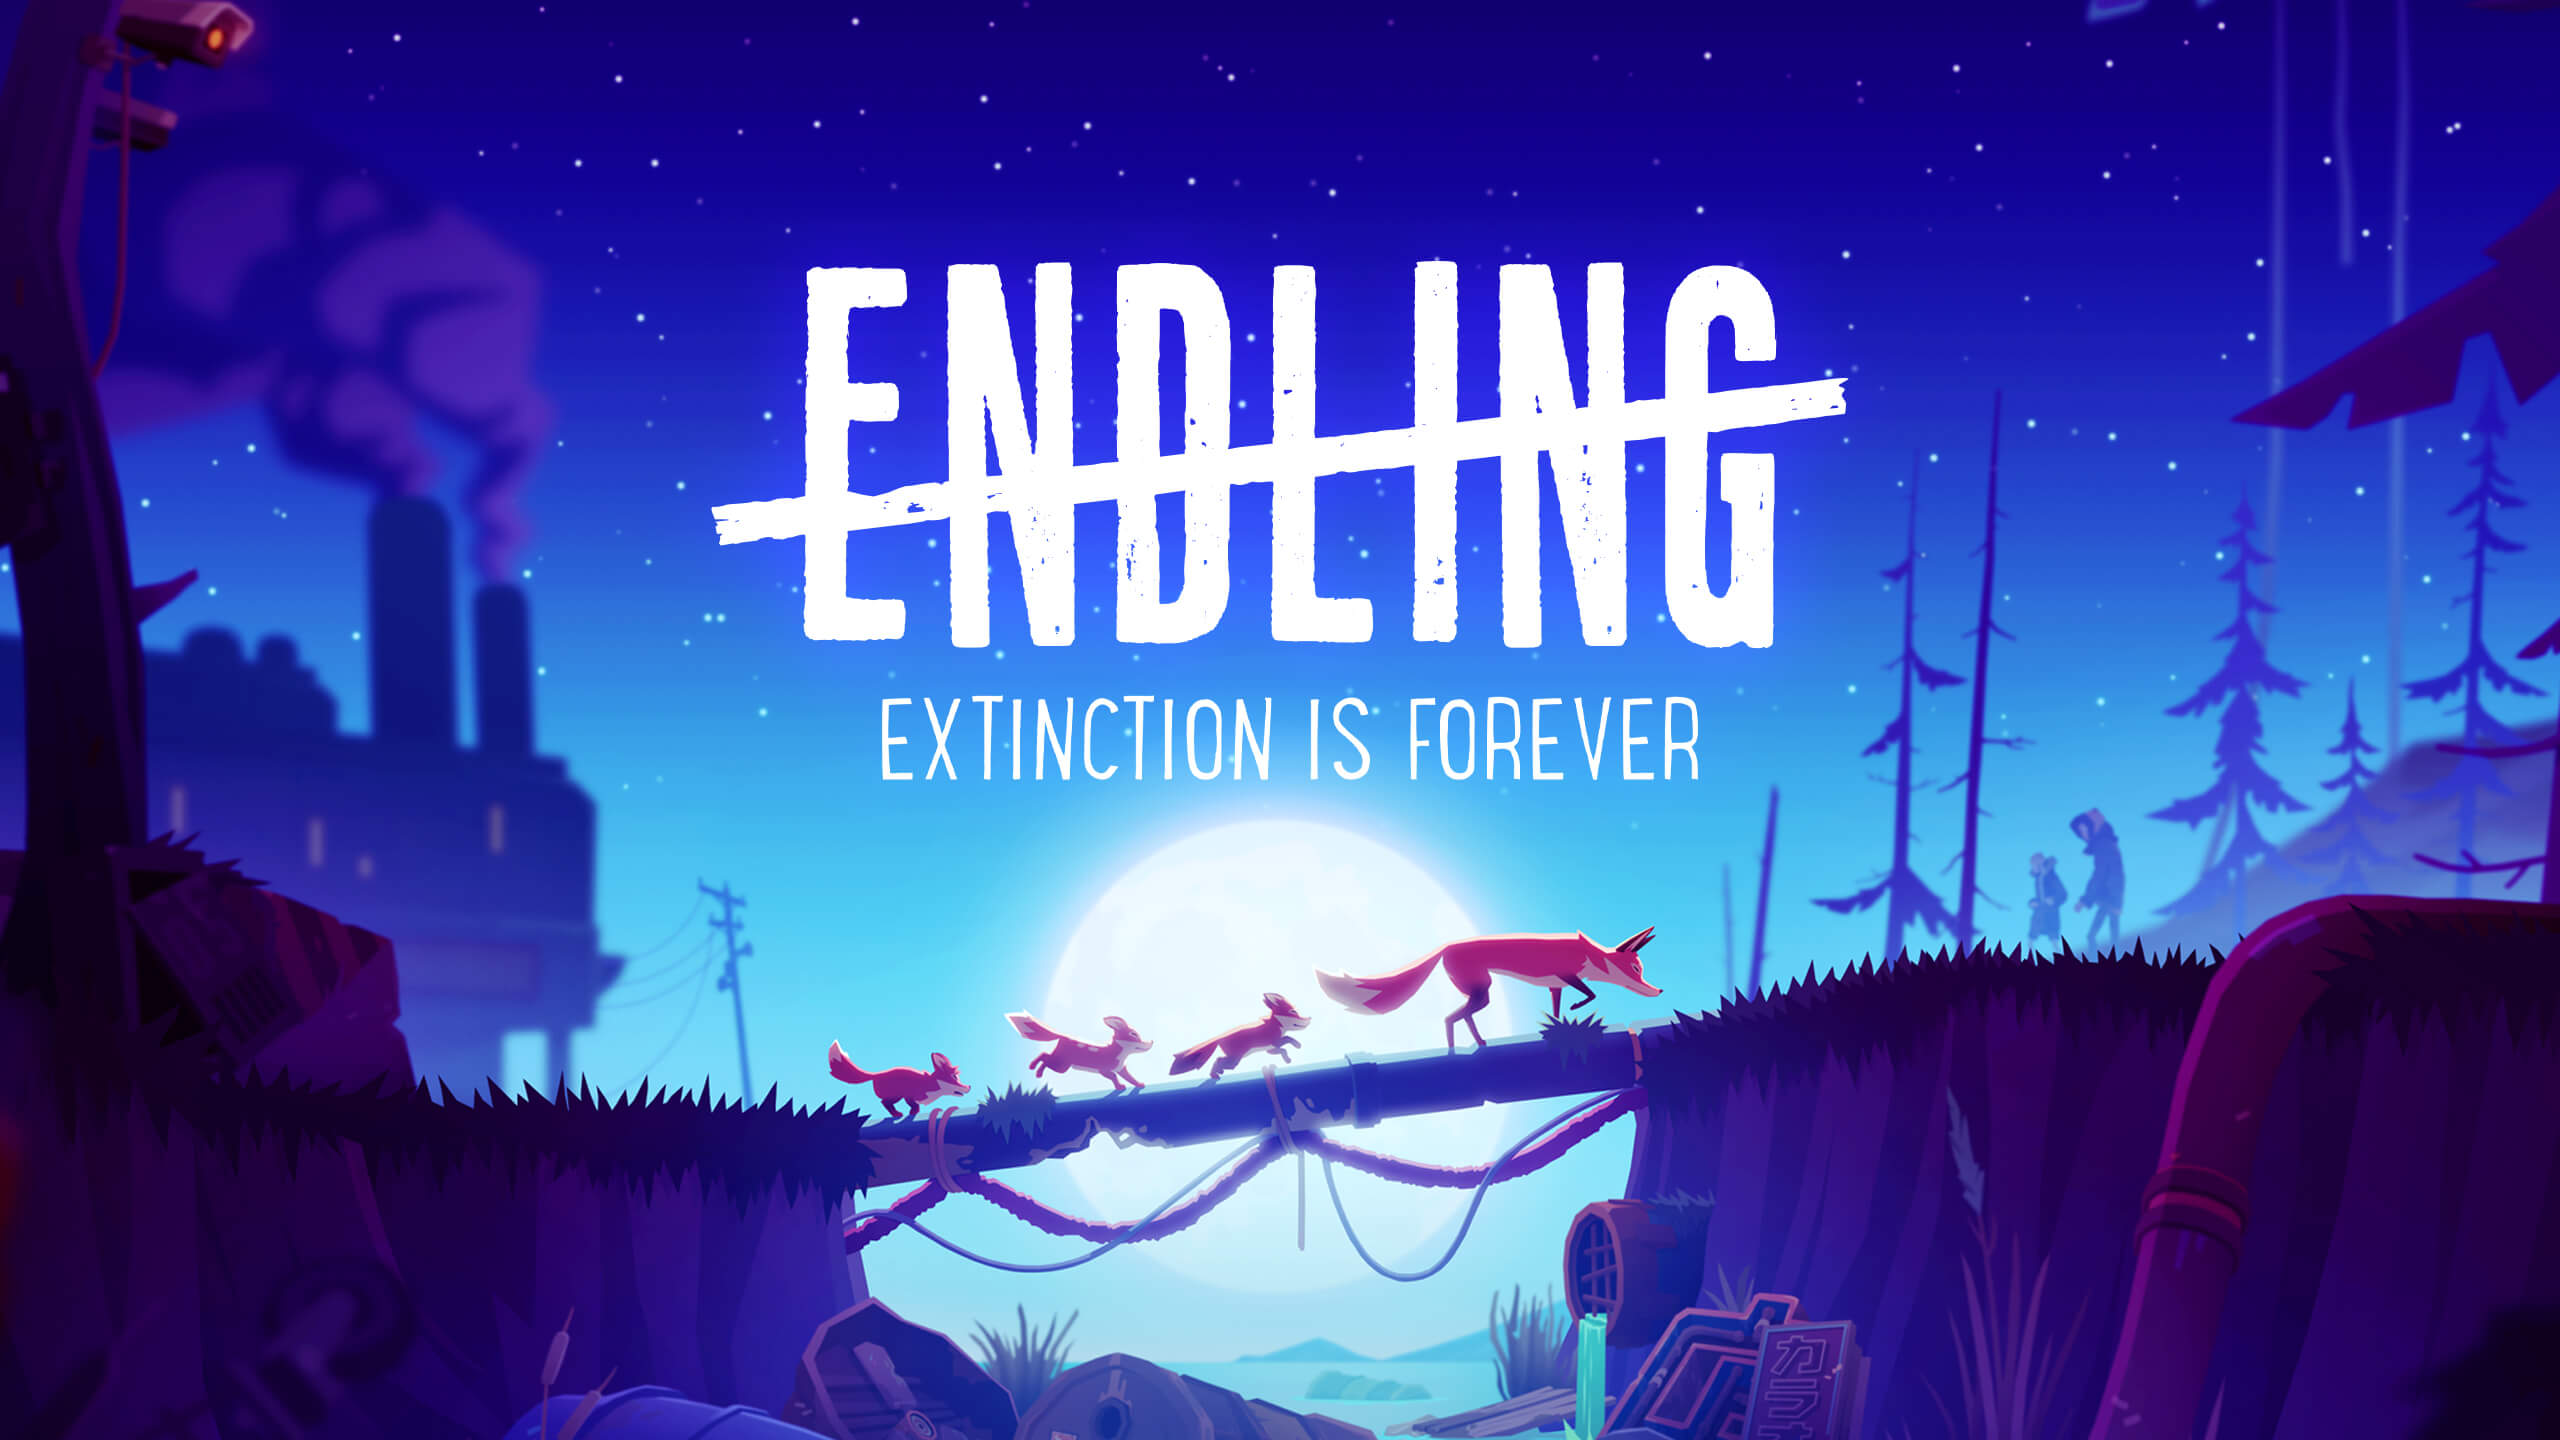 endling extinction is forever download